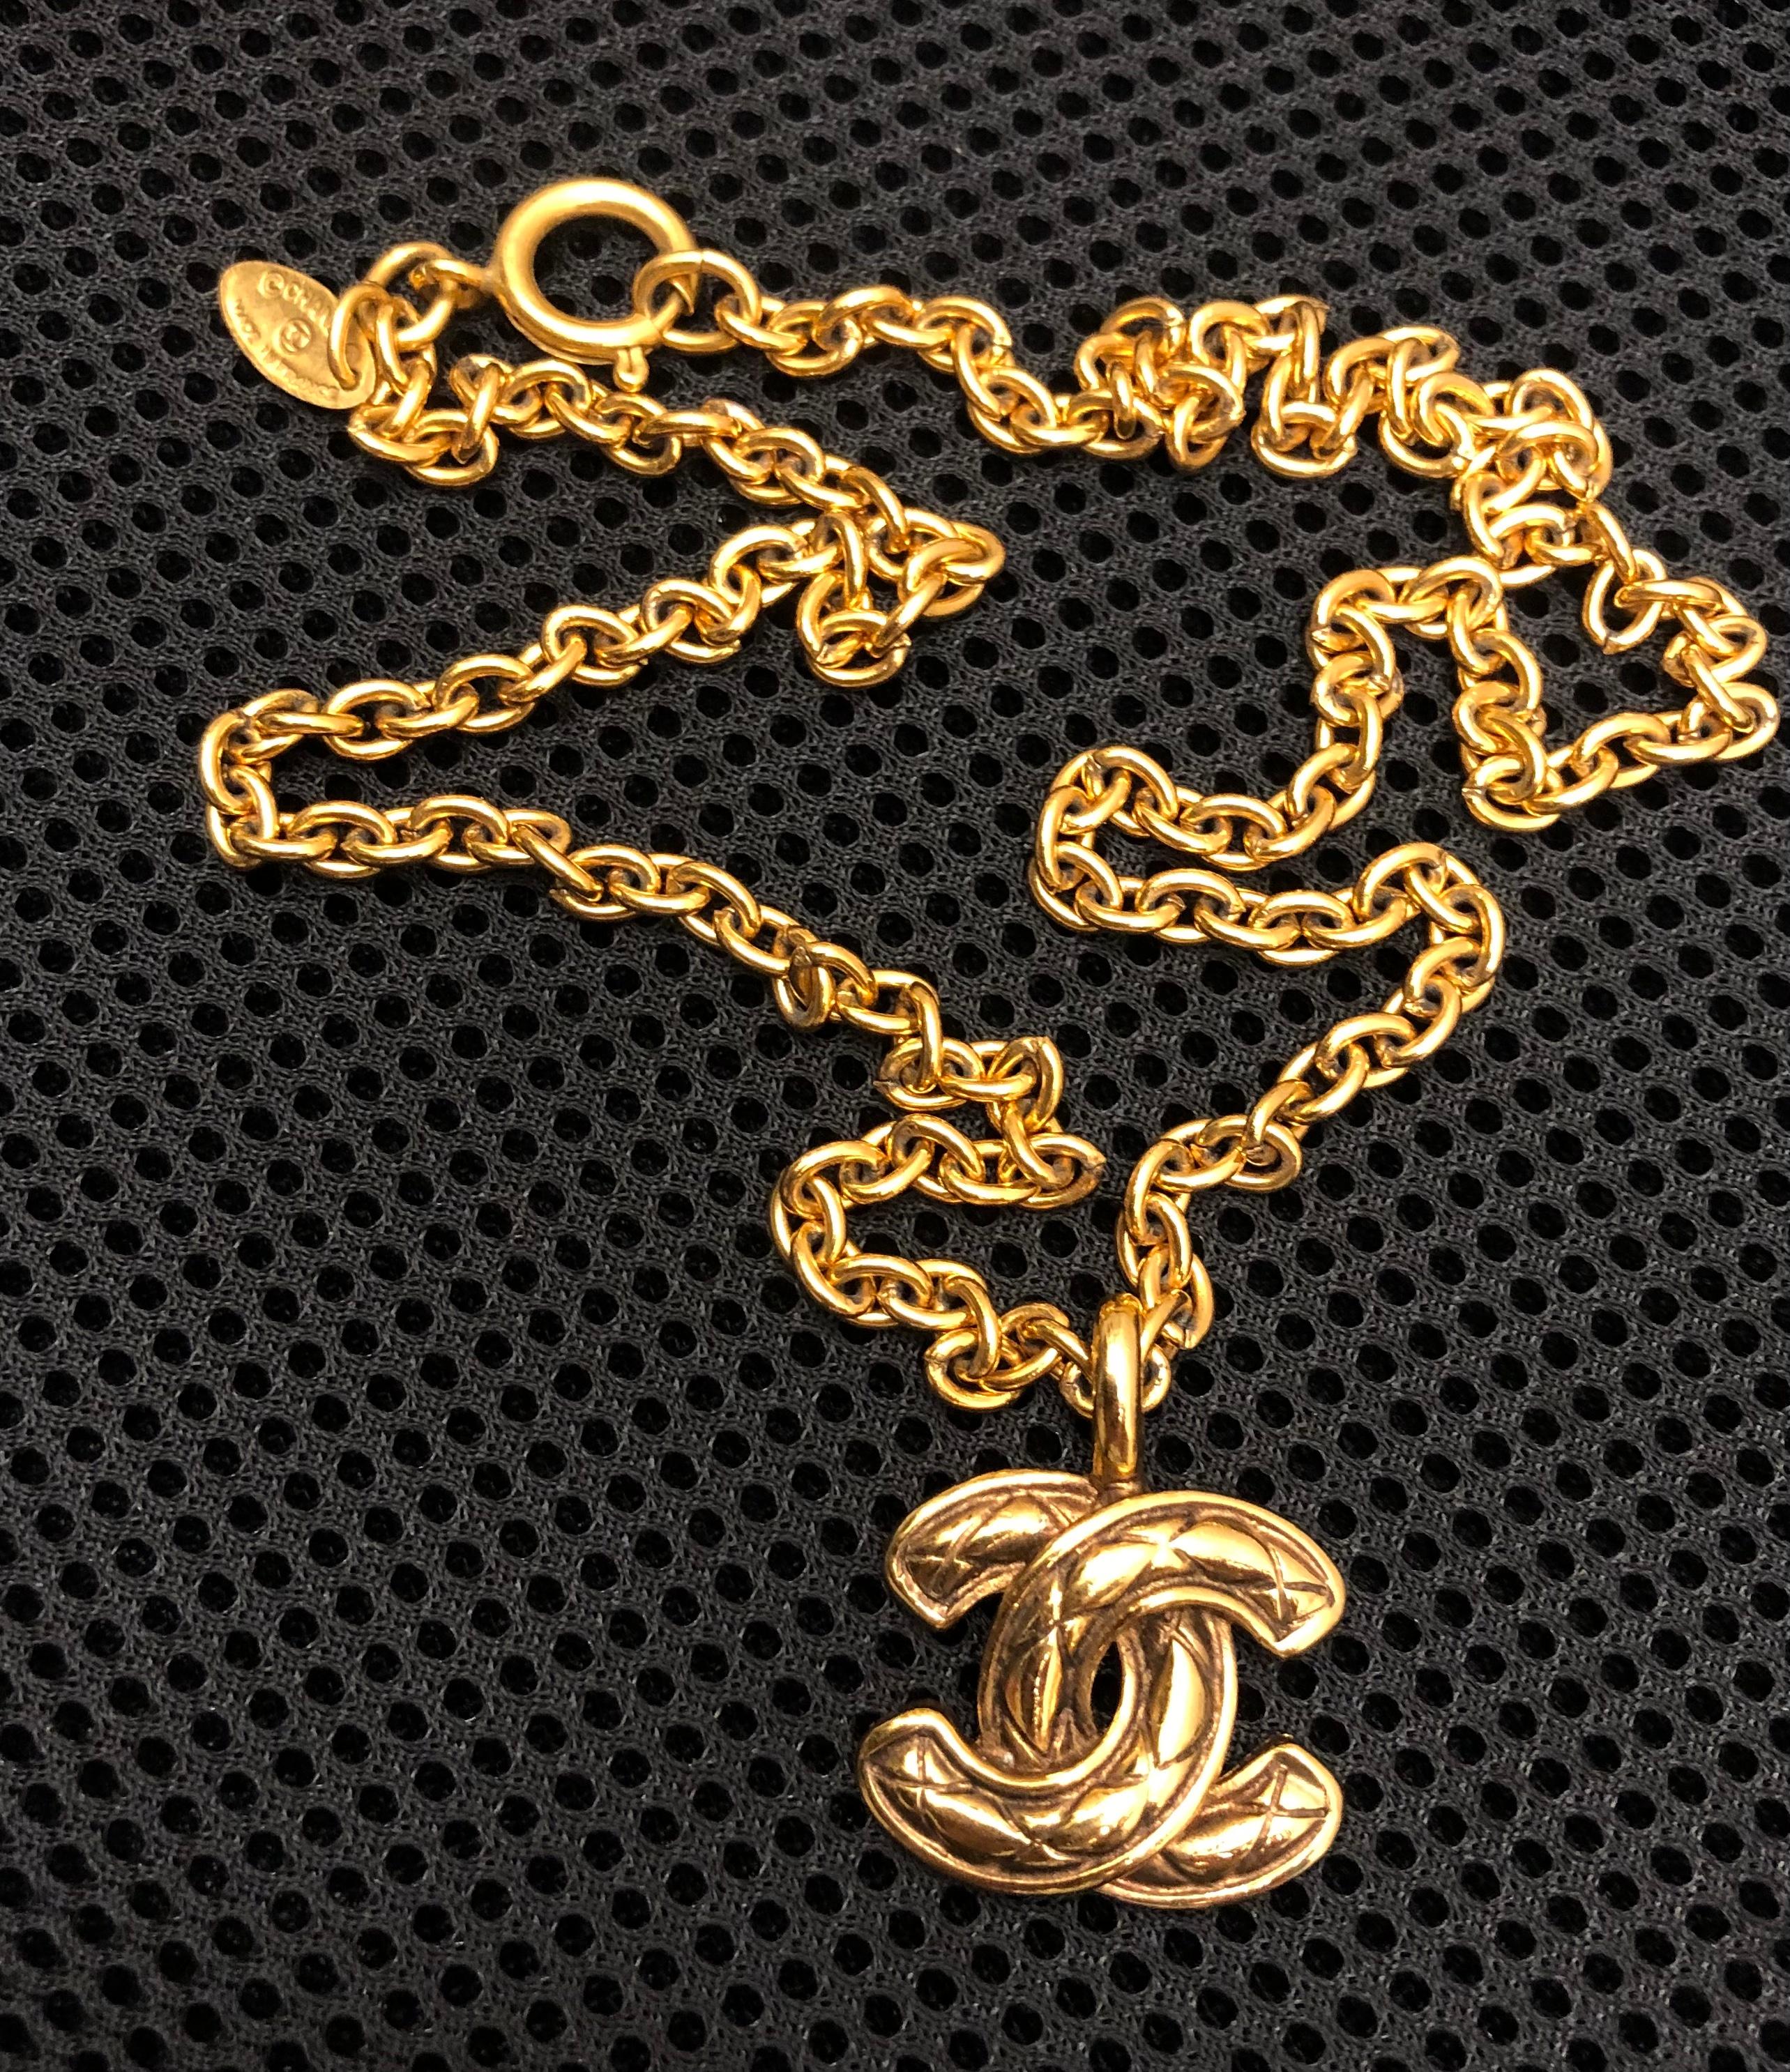 Ce collier Chanel vintage des années 1980 est réalisé en chaîne dorée et comporte une breloque CC matelassée dorée emblématique. Il s'agit du plus petit modèle de la série CC matelassée. Estampillé CHANEL fabriqué en France. Fermeture par anneau à